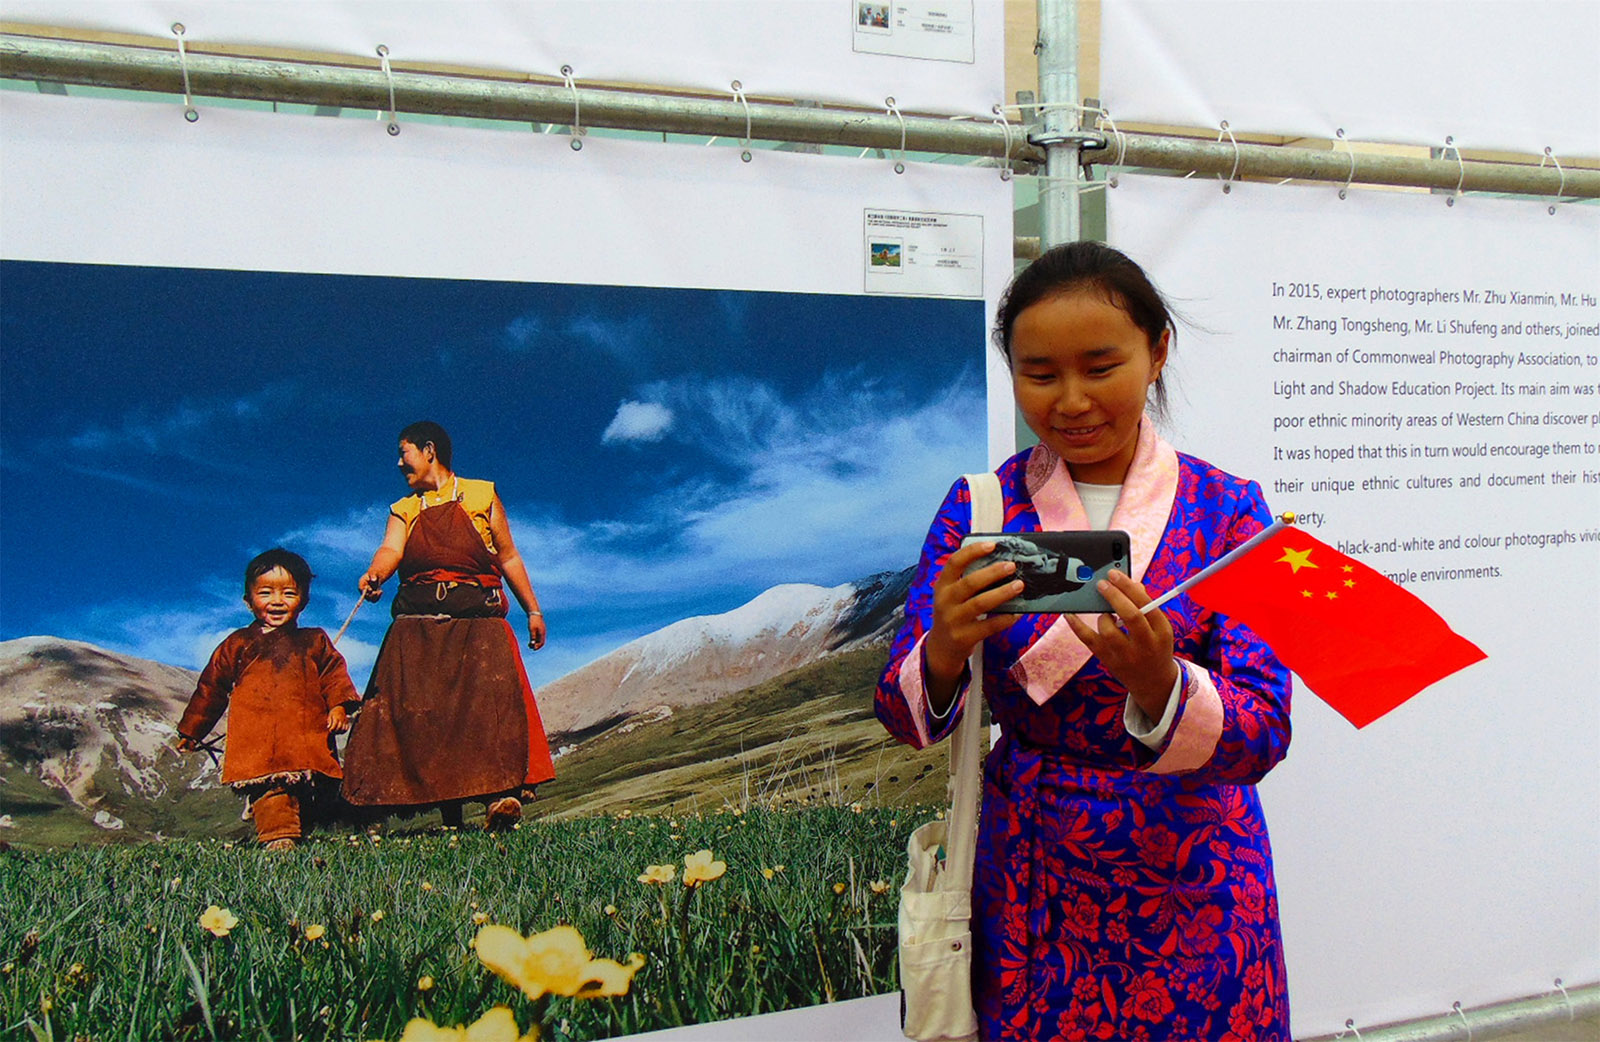 強巴卓嘎(高中組)西藏《將北京攝影展作品傳給家人》 2019北京國際攝影周期間，藏族學生在光影助學工程工委會統一組織下，來到北京中華世紀壇全國第三屆光影助學工程展館，藏族學生用手機拍一張自己與反映藏民生活攝影作品的照片，發給家人分享她的快樂。搜索復制